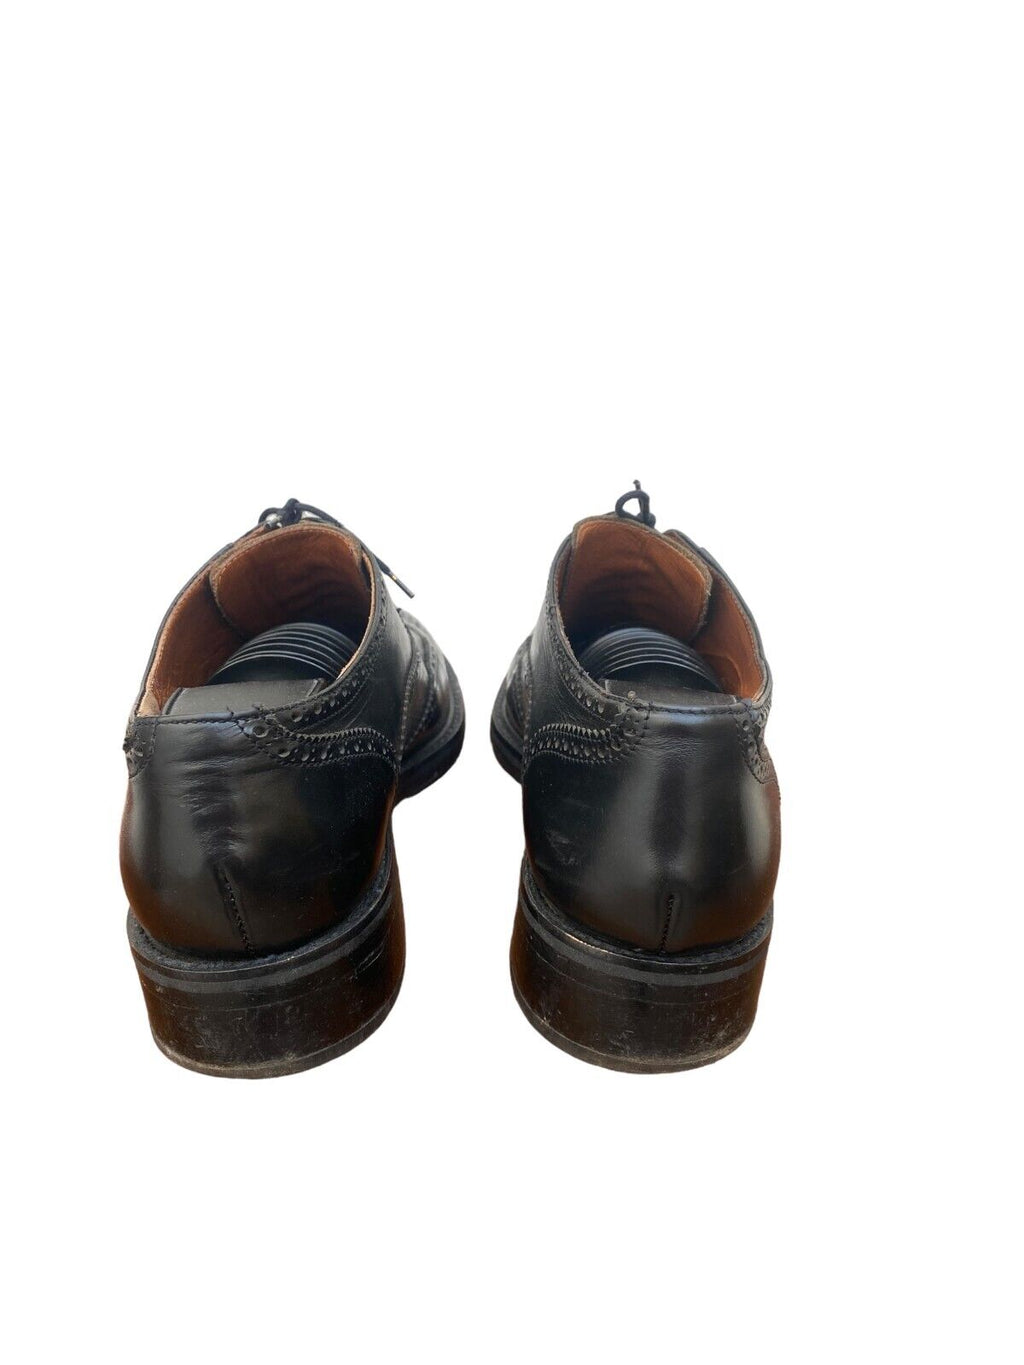 Black Leather Derbies shoes